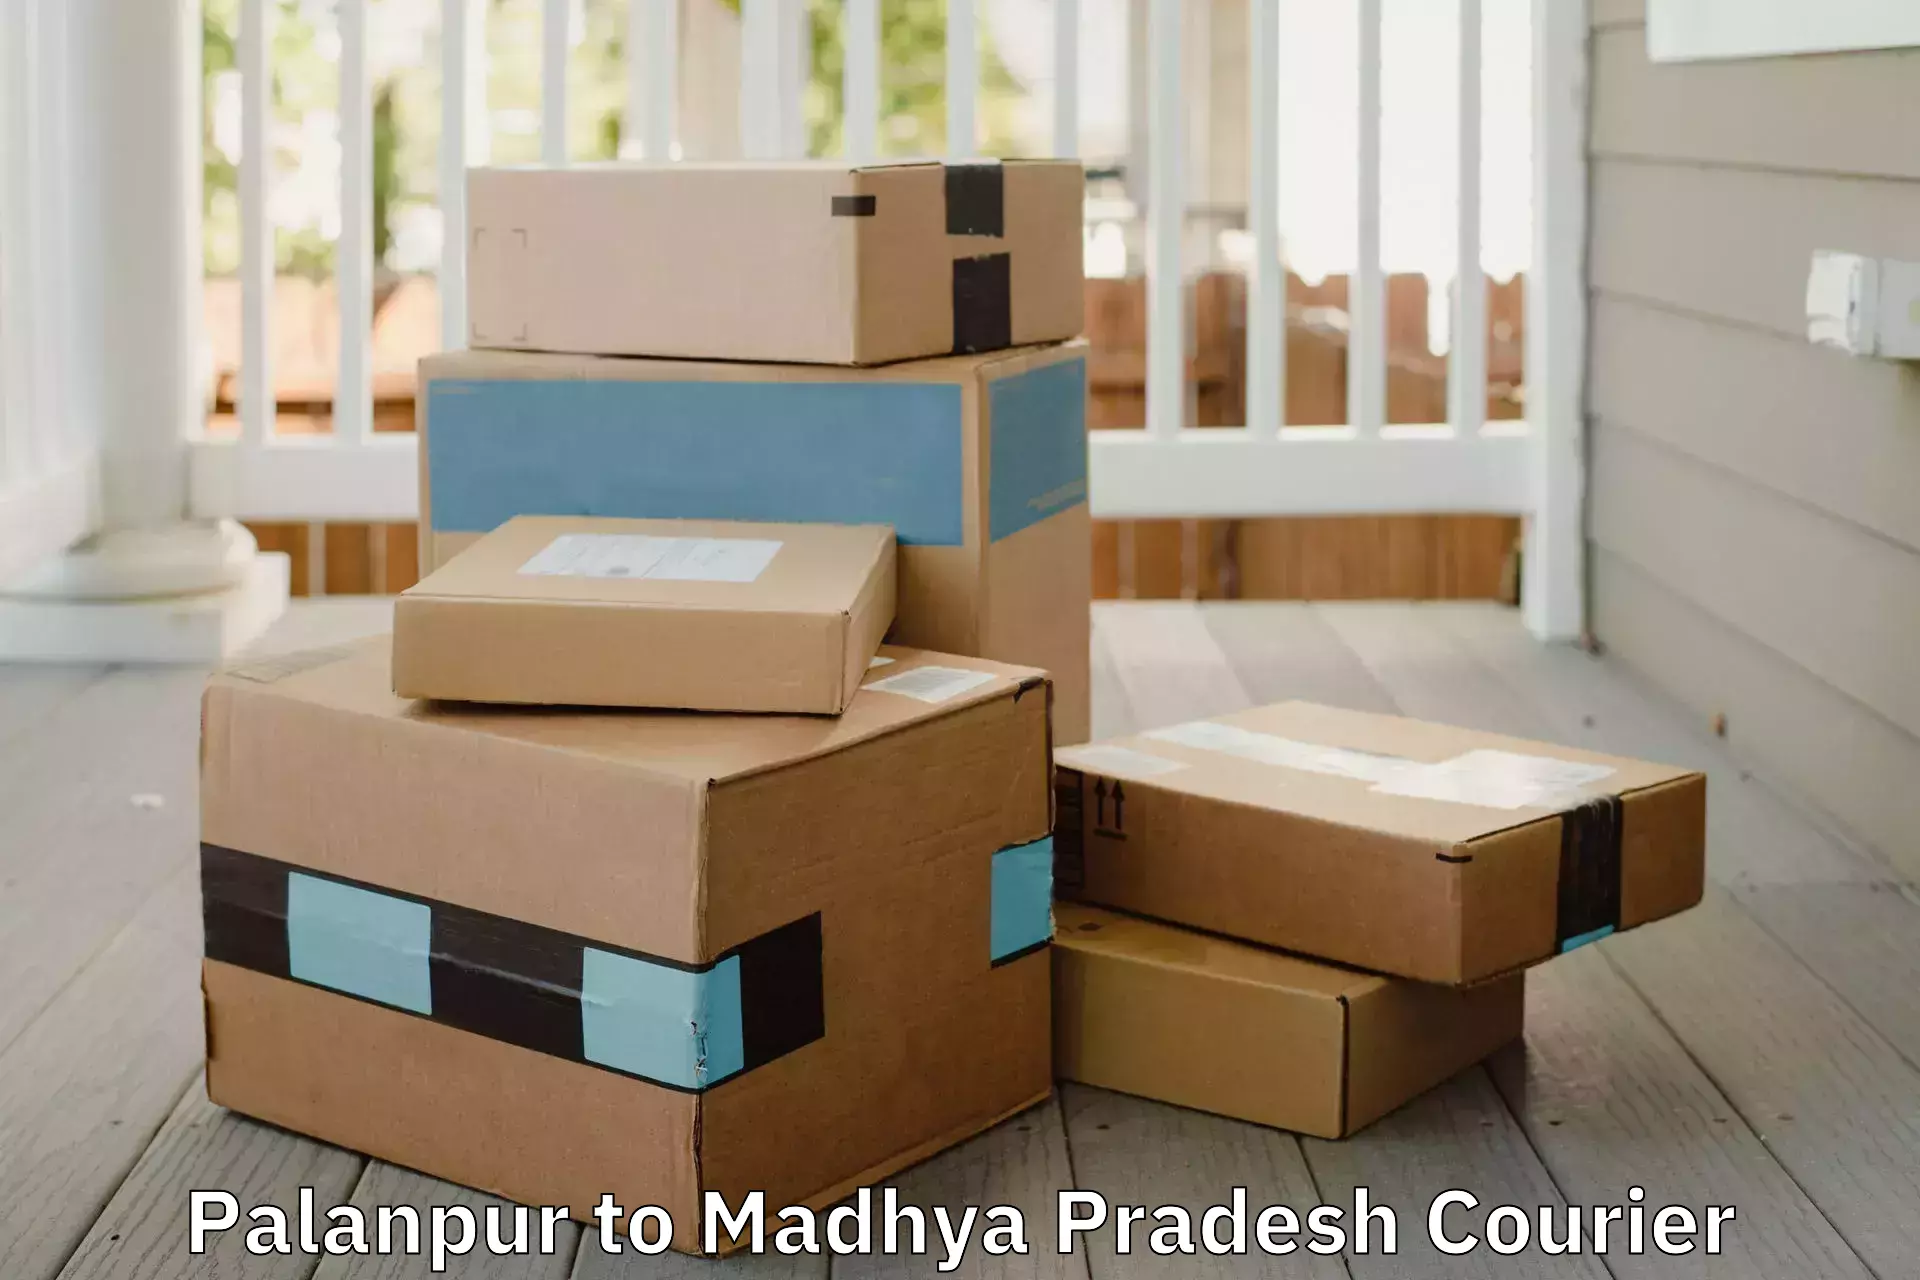 Home moving experts Palanpur to Khajuraho